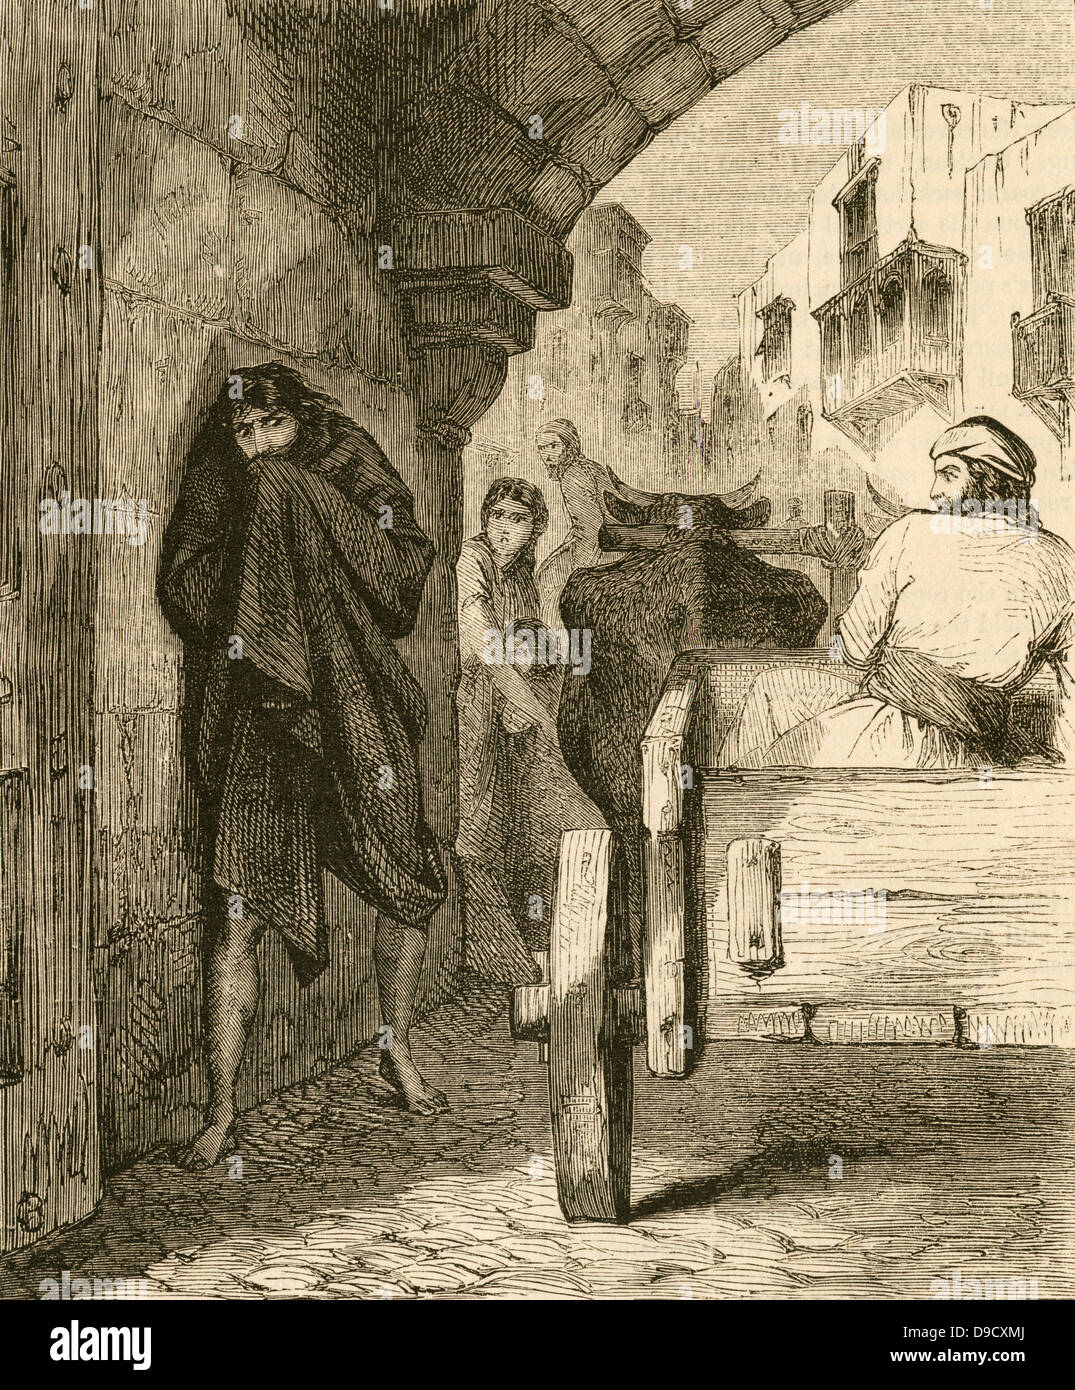 Zimmer für die Aussätzigen! Zimmer! Wegen der Angst um die Lepra durch Kontakt mit Kranken, Aussätzigen wurden als unrein und isoliert in der Aussätzigen Krankenhäuser. Gravur c 1870. Stockfoto